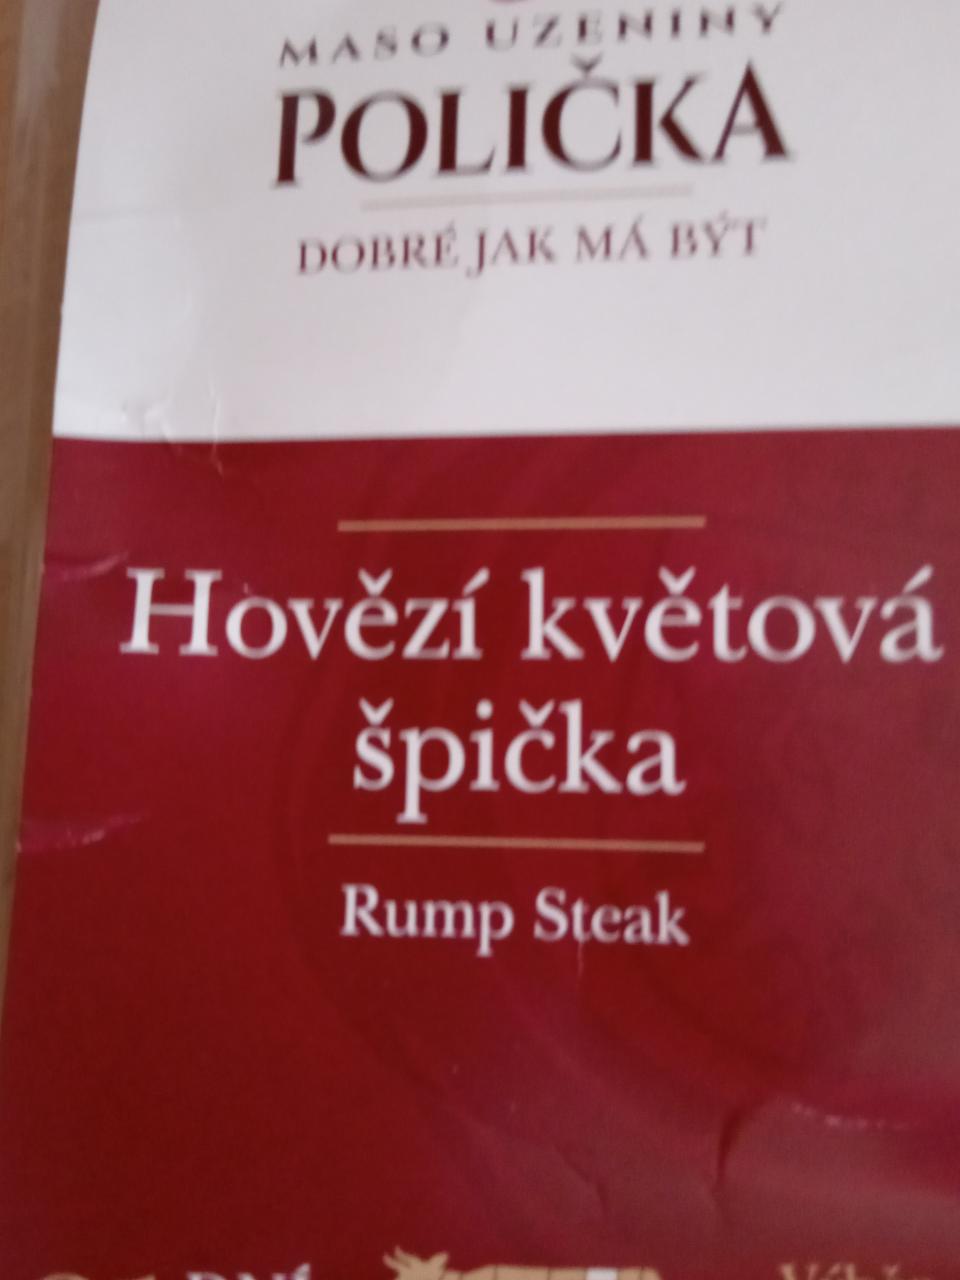 Fotografie - Hovězí květová špička Rump Steak Maso uzeniny Polička